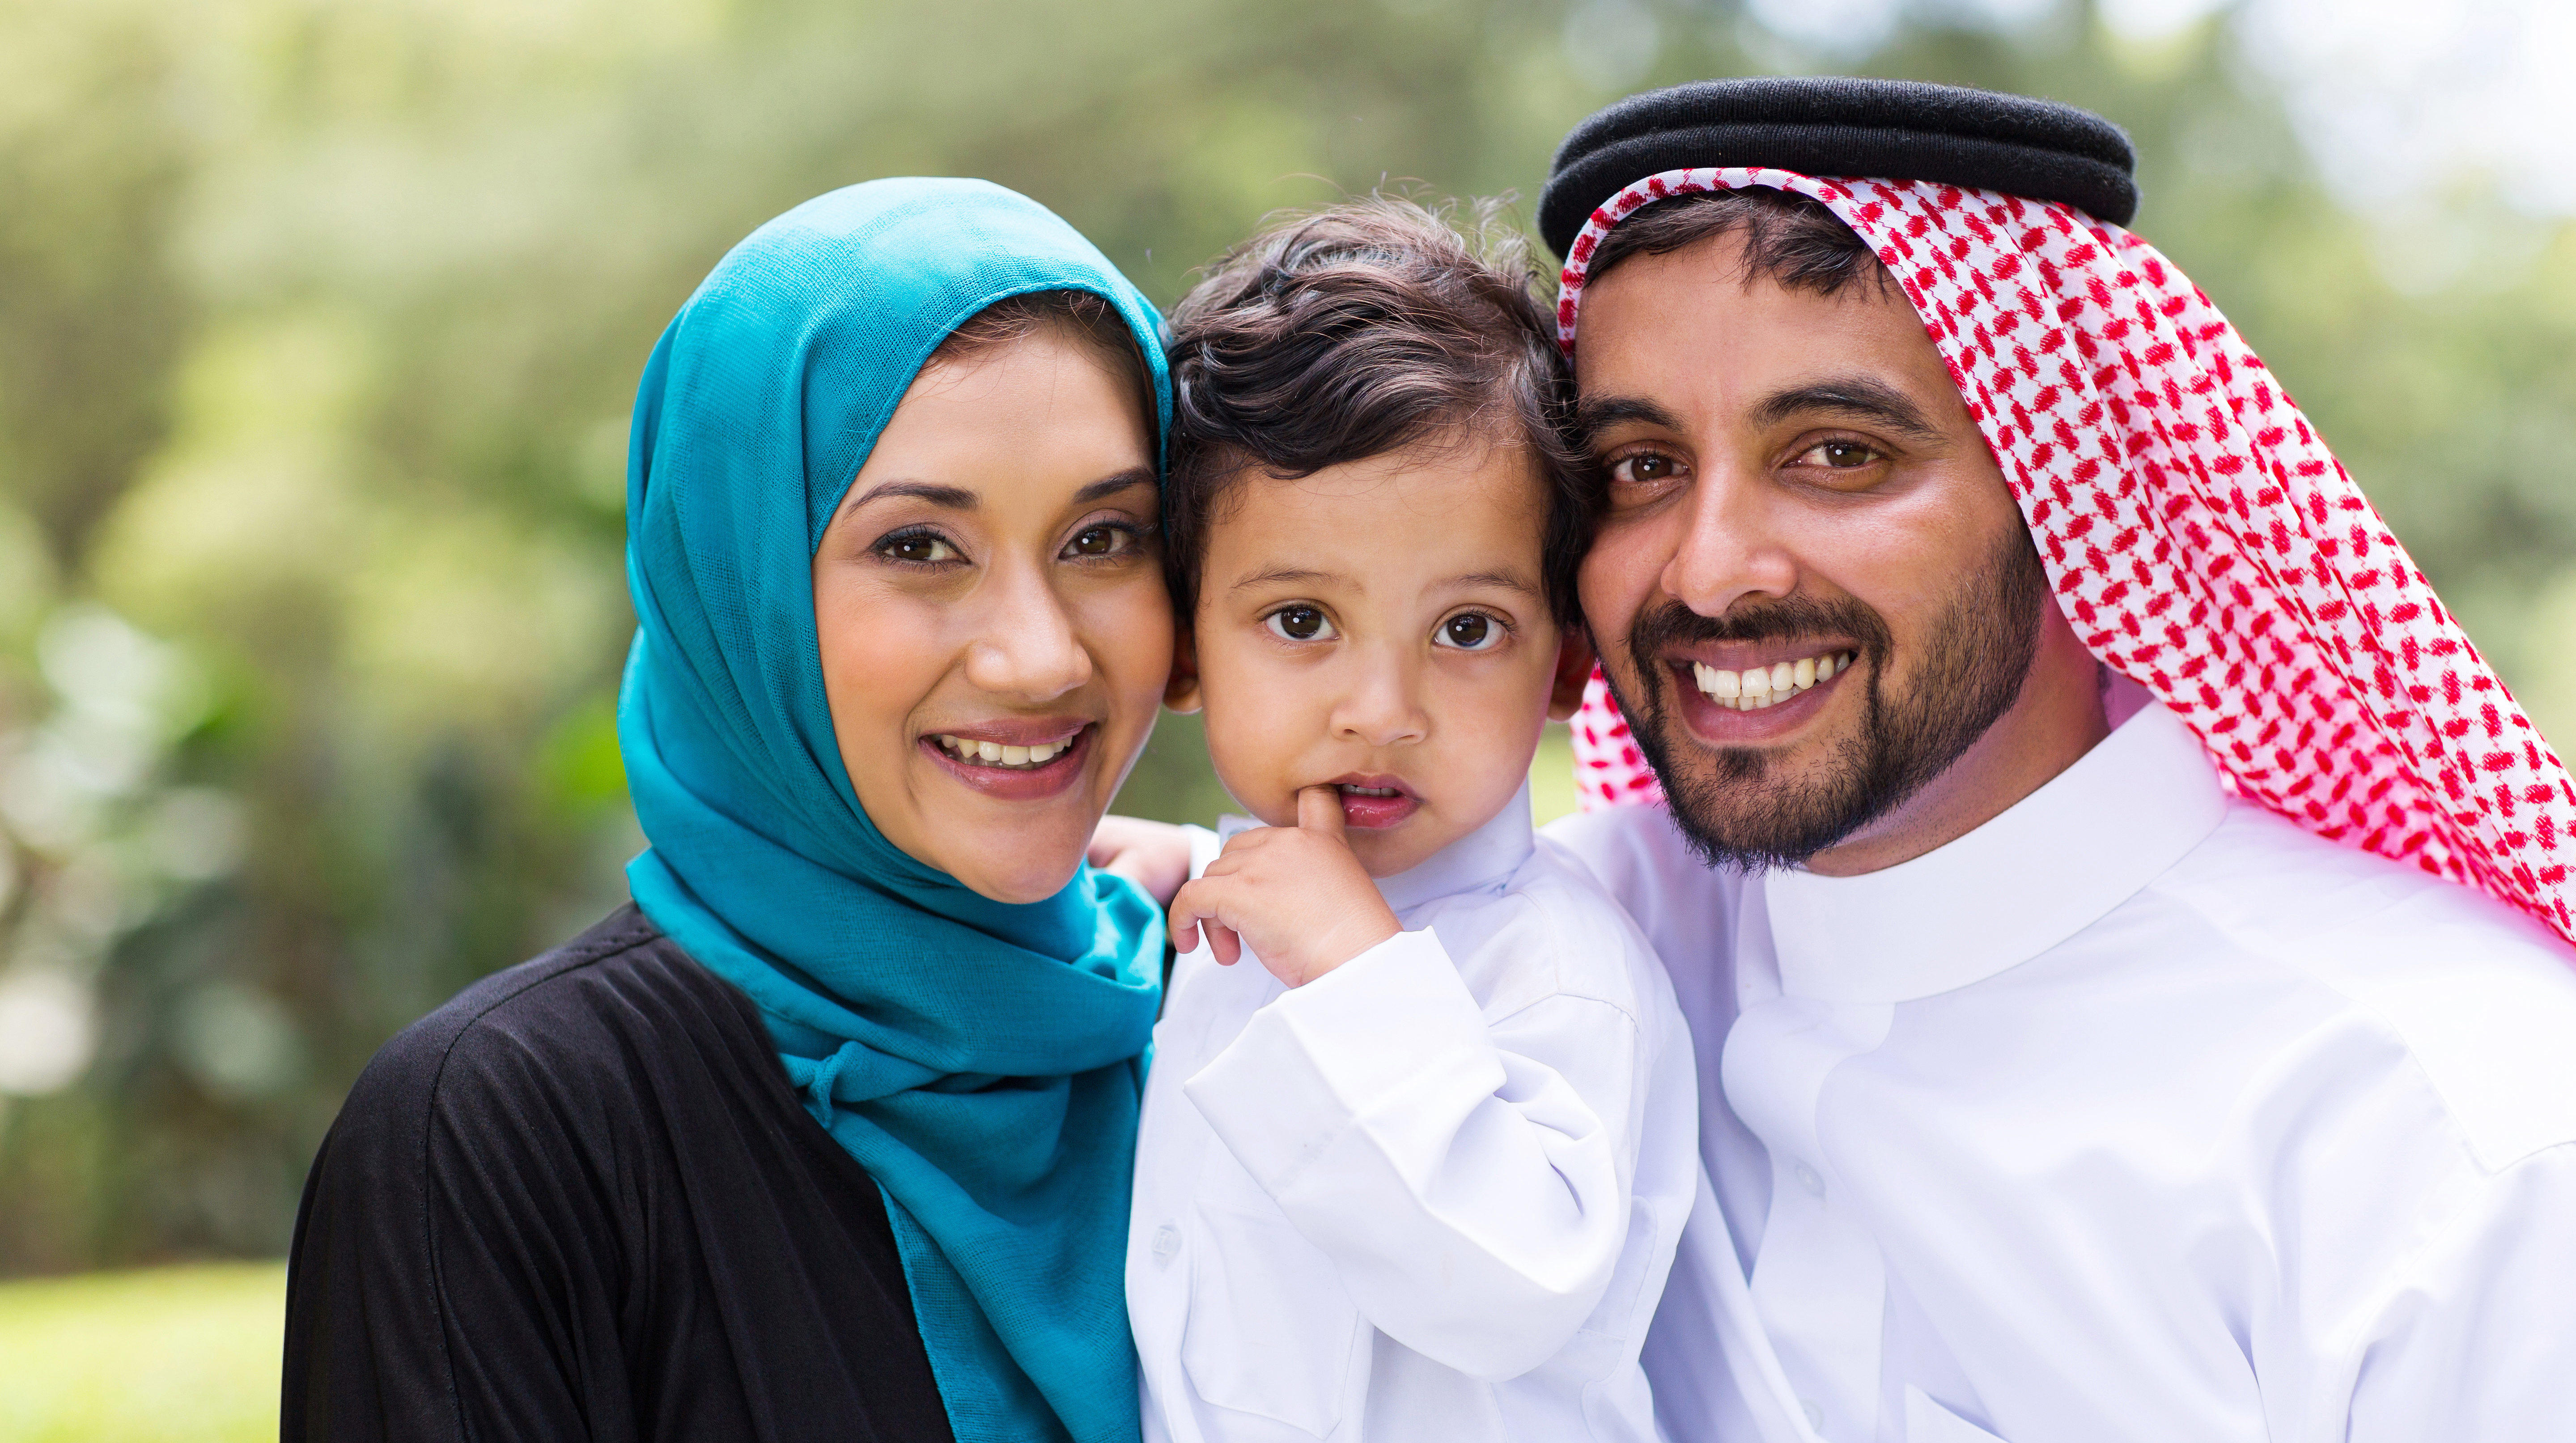 Семья и национальность. Мусульманская семья. Арабская семья. Мусульмане.